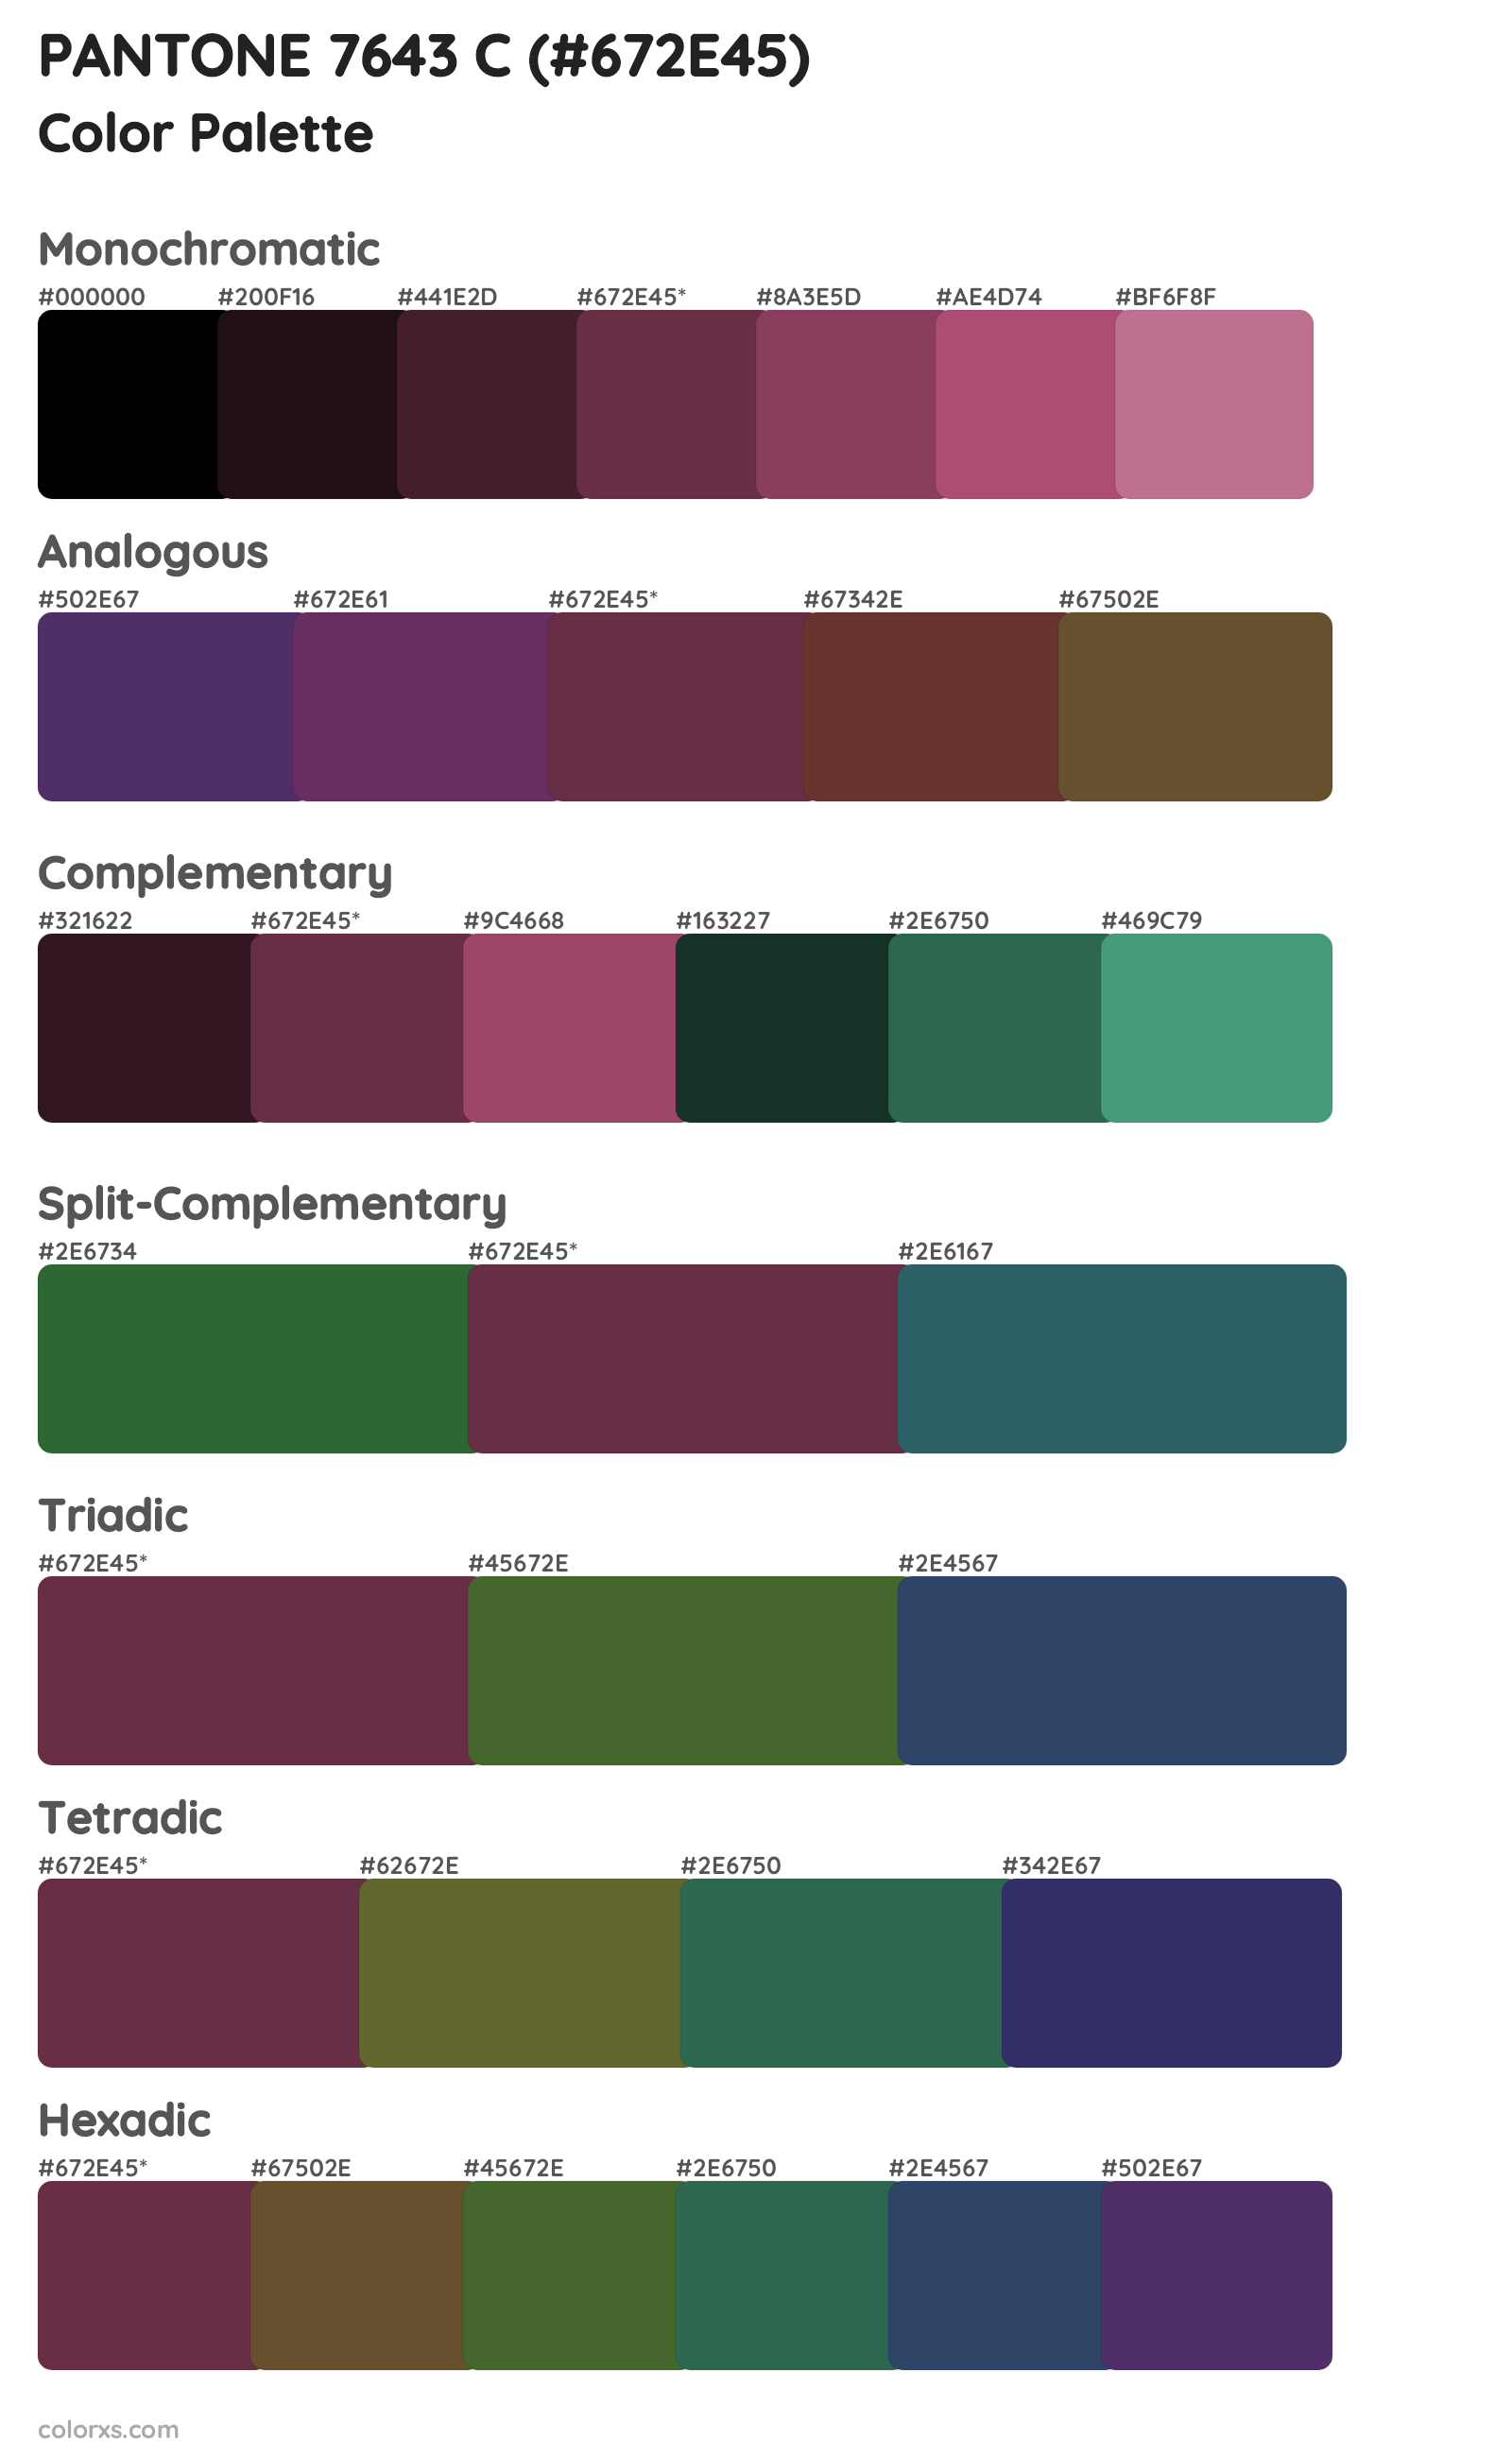 PANTONE 7643 C Color Scheme Palettes